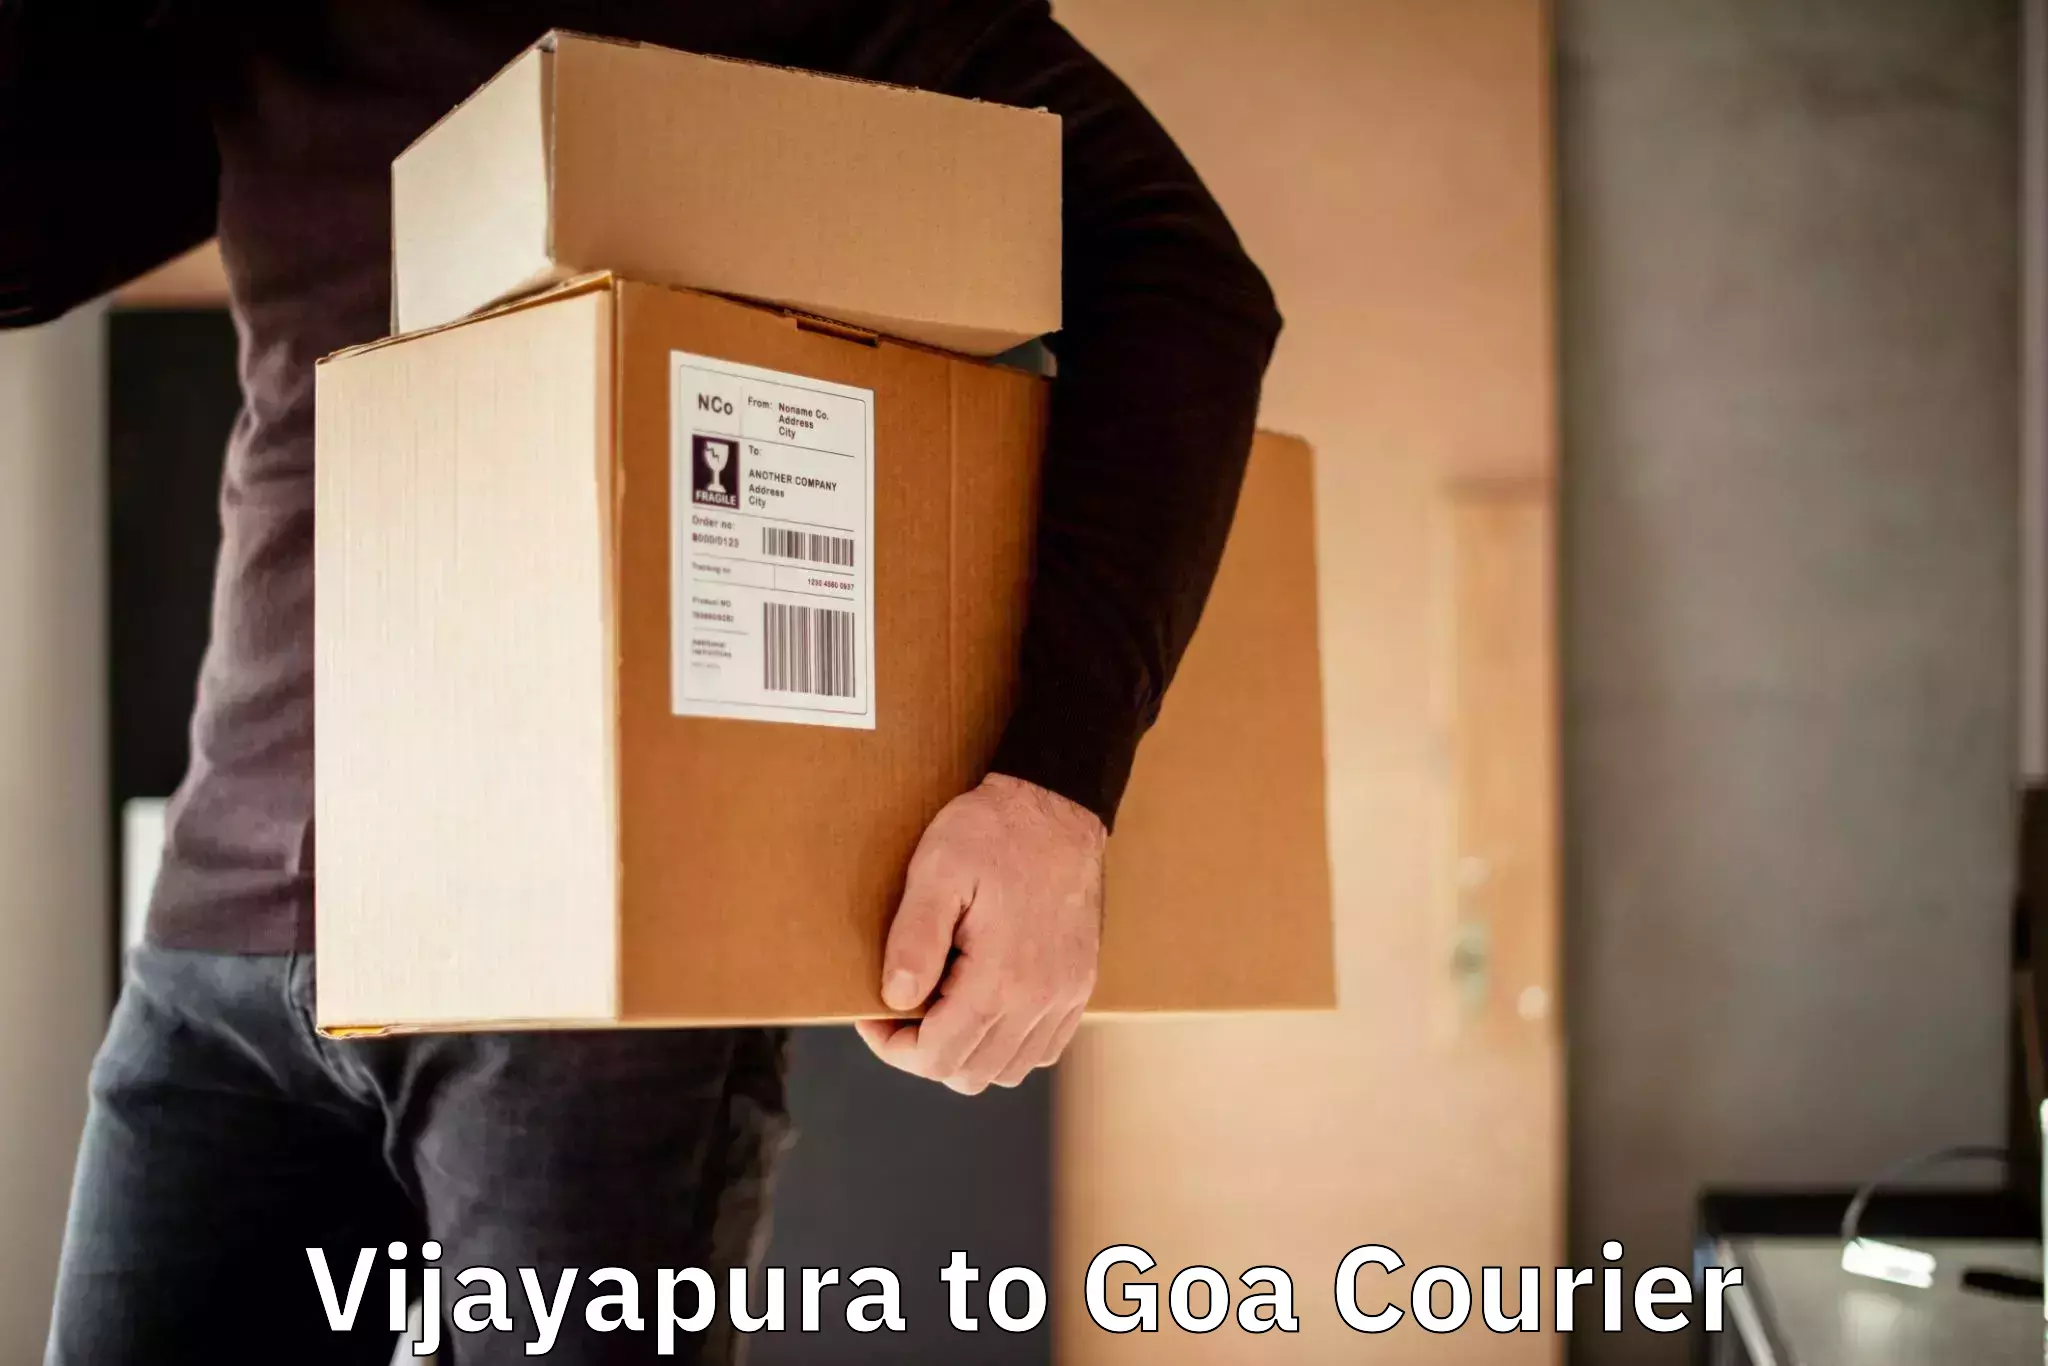 Fast delivery service Vijayapura to Panaji